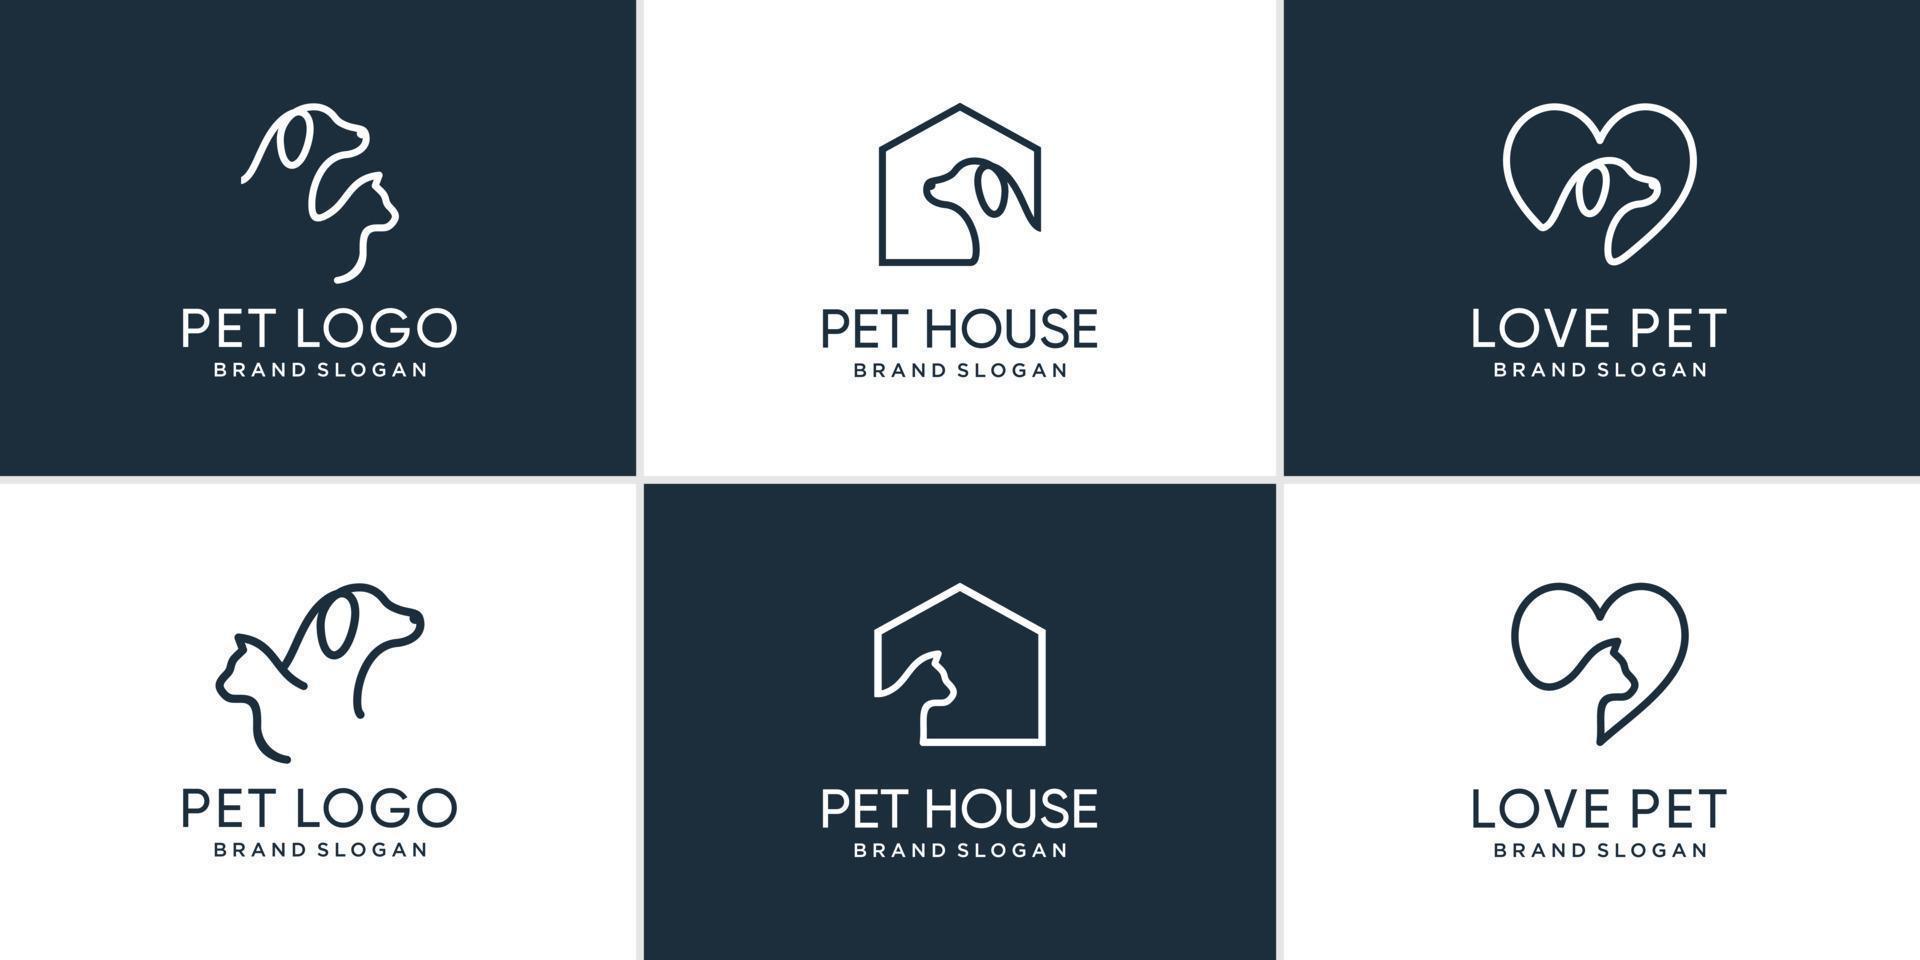 colección de logotipos de mascotas con elemento creativo objeto de perro y gato vector premium